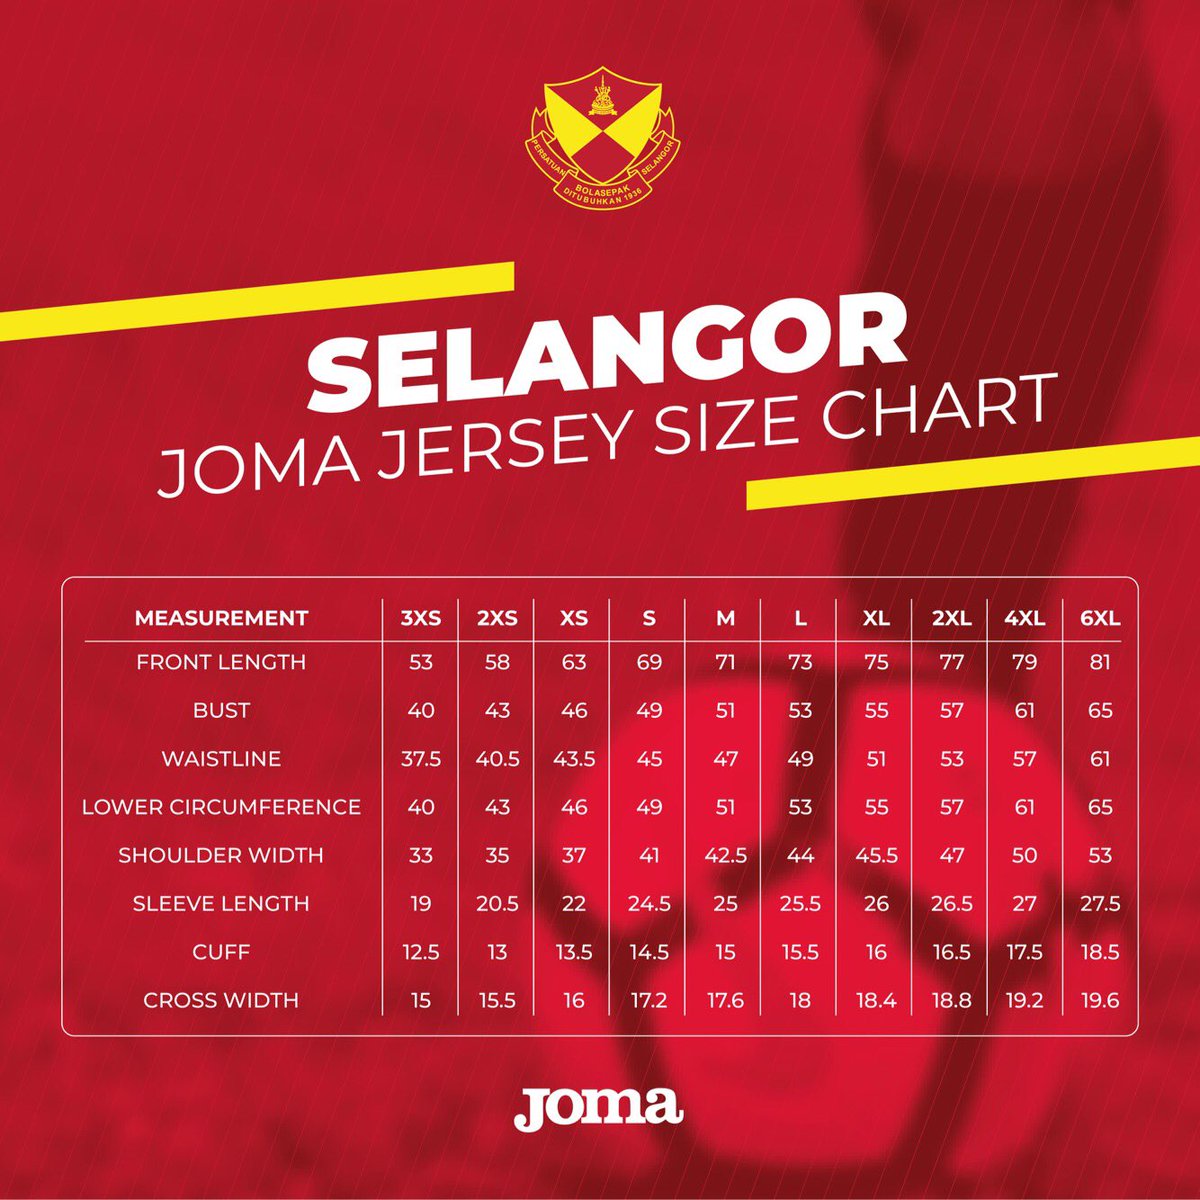 Joma Jersey Size Chart